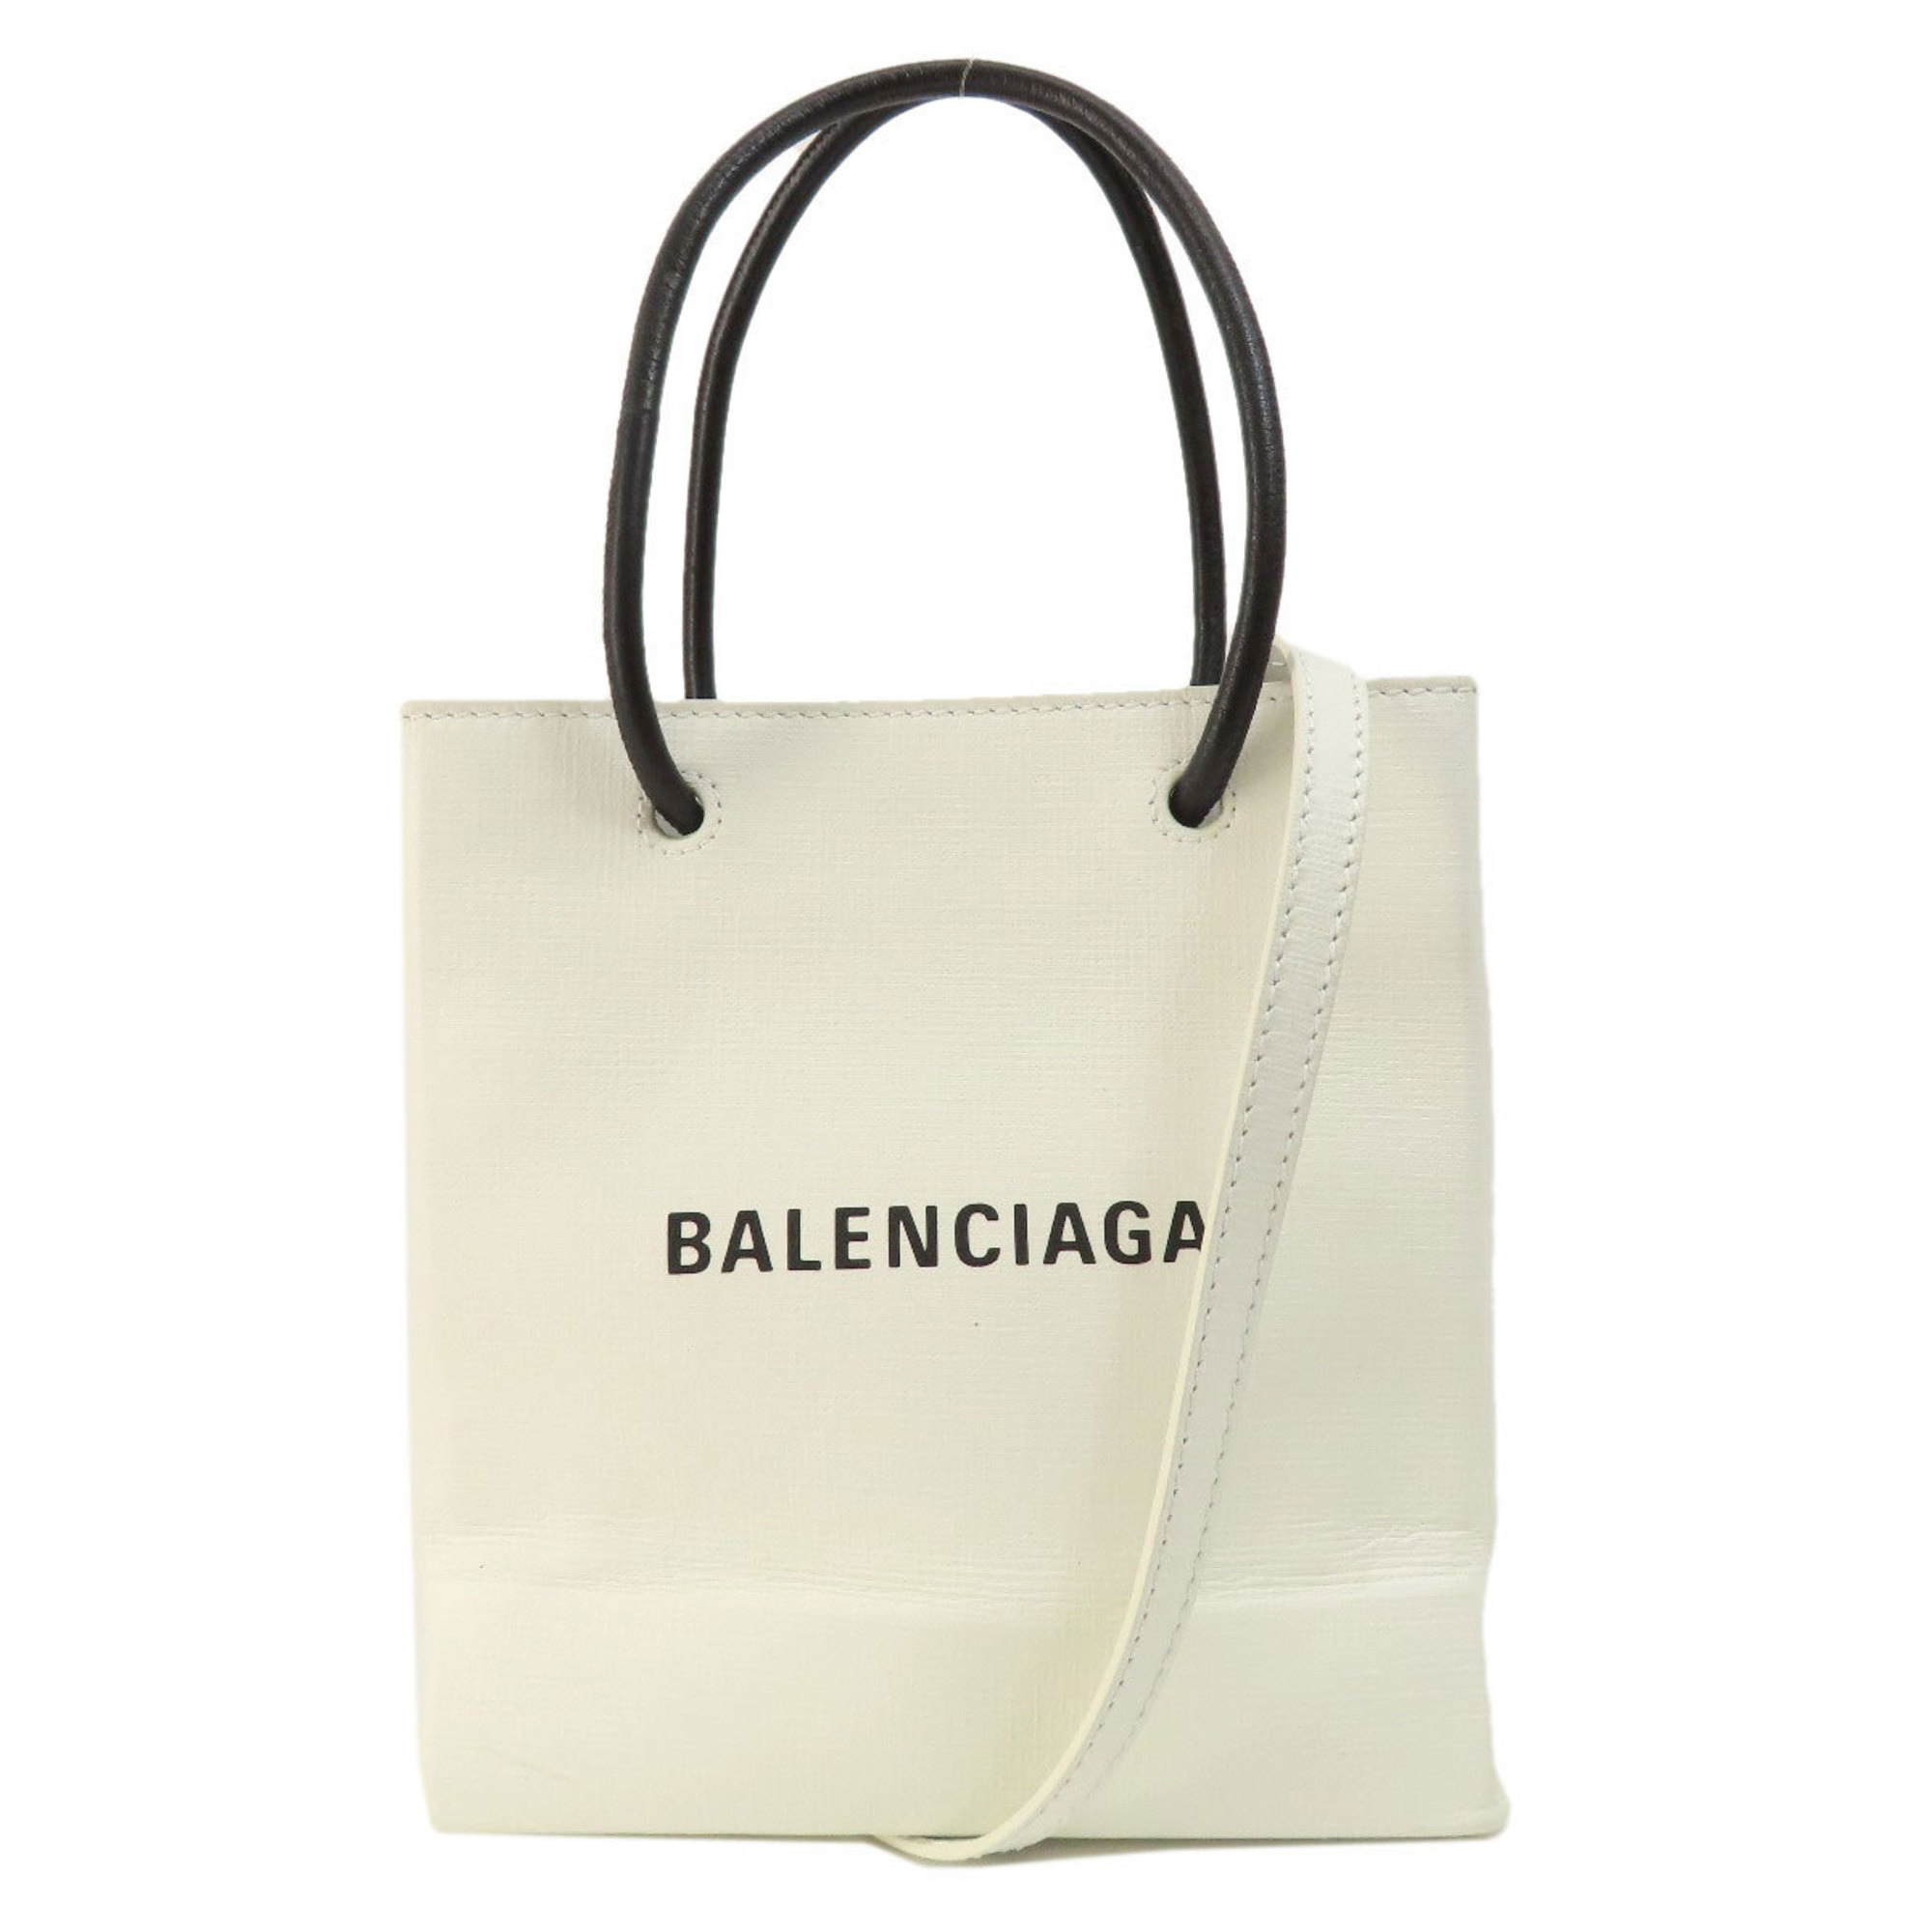 Balenciaga 572411 Tote Handbag Leather Women's BALENCIAGA